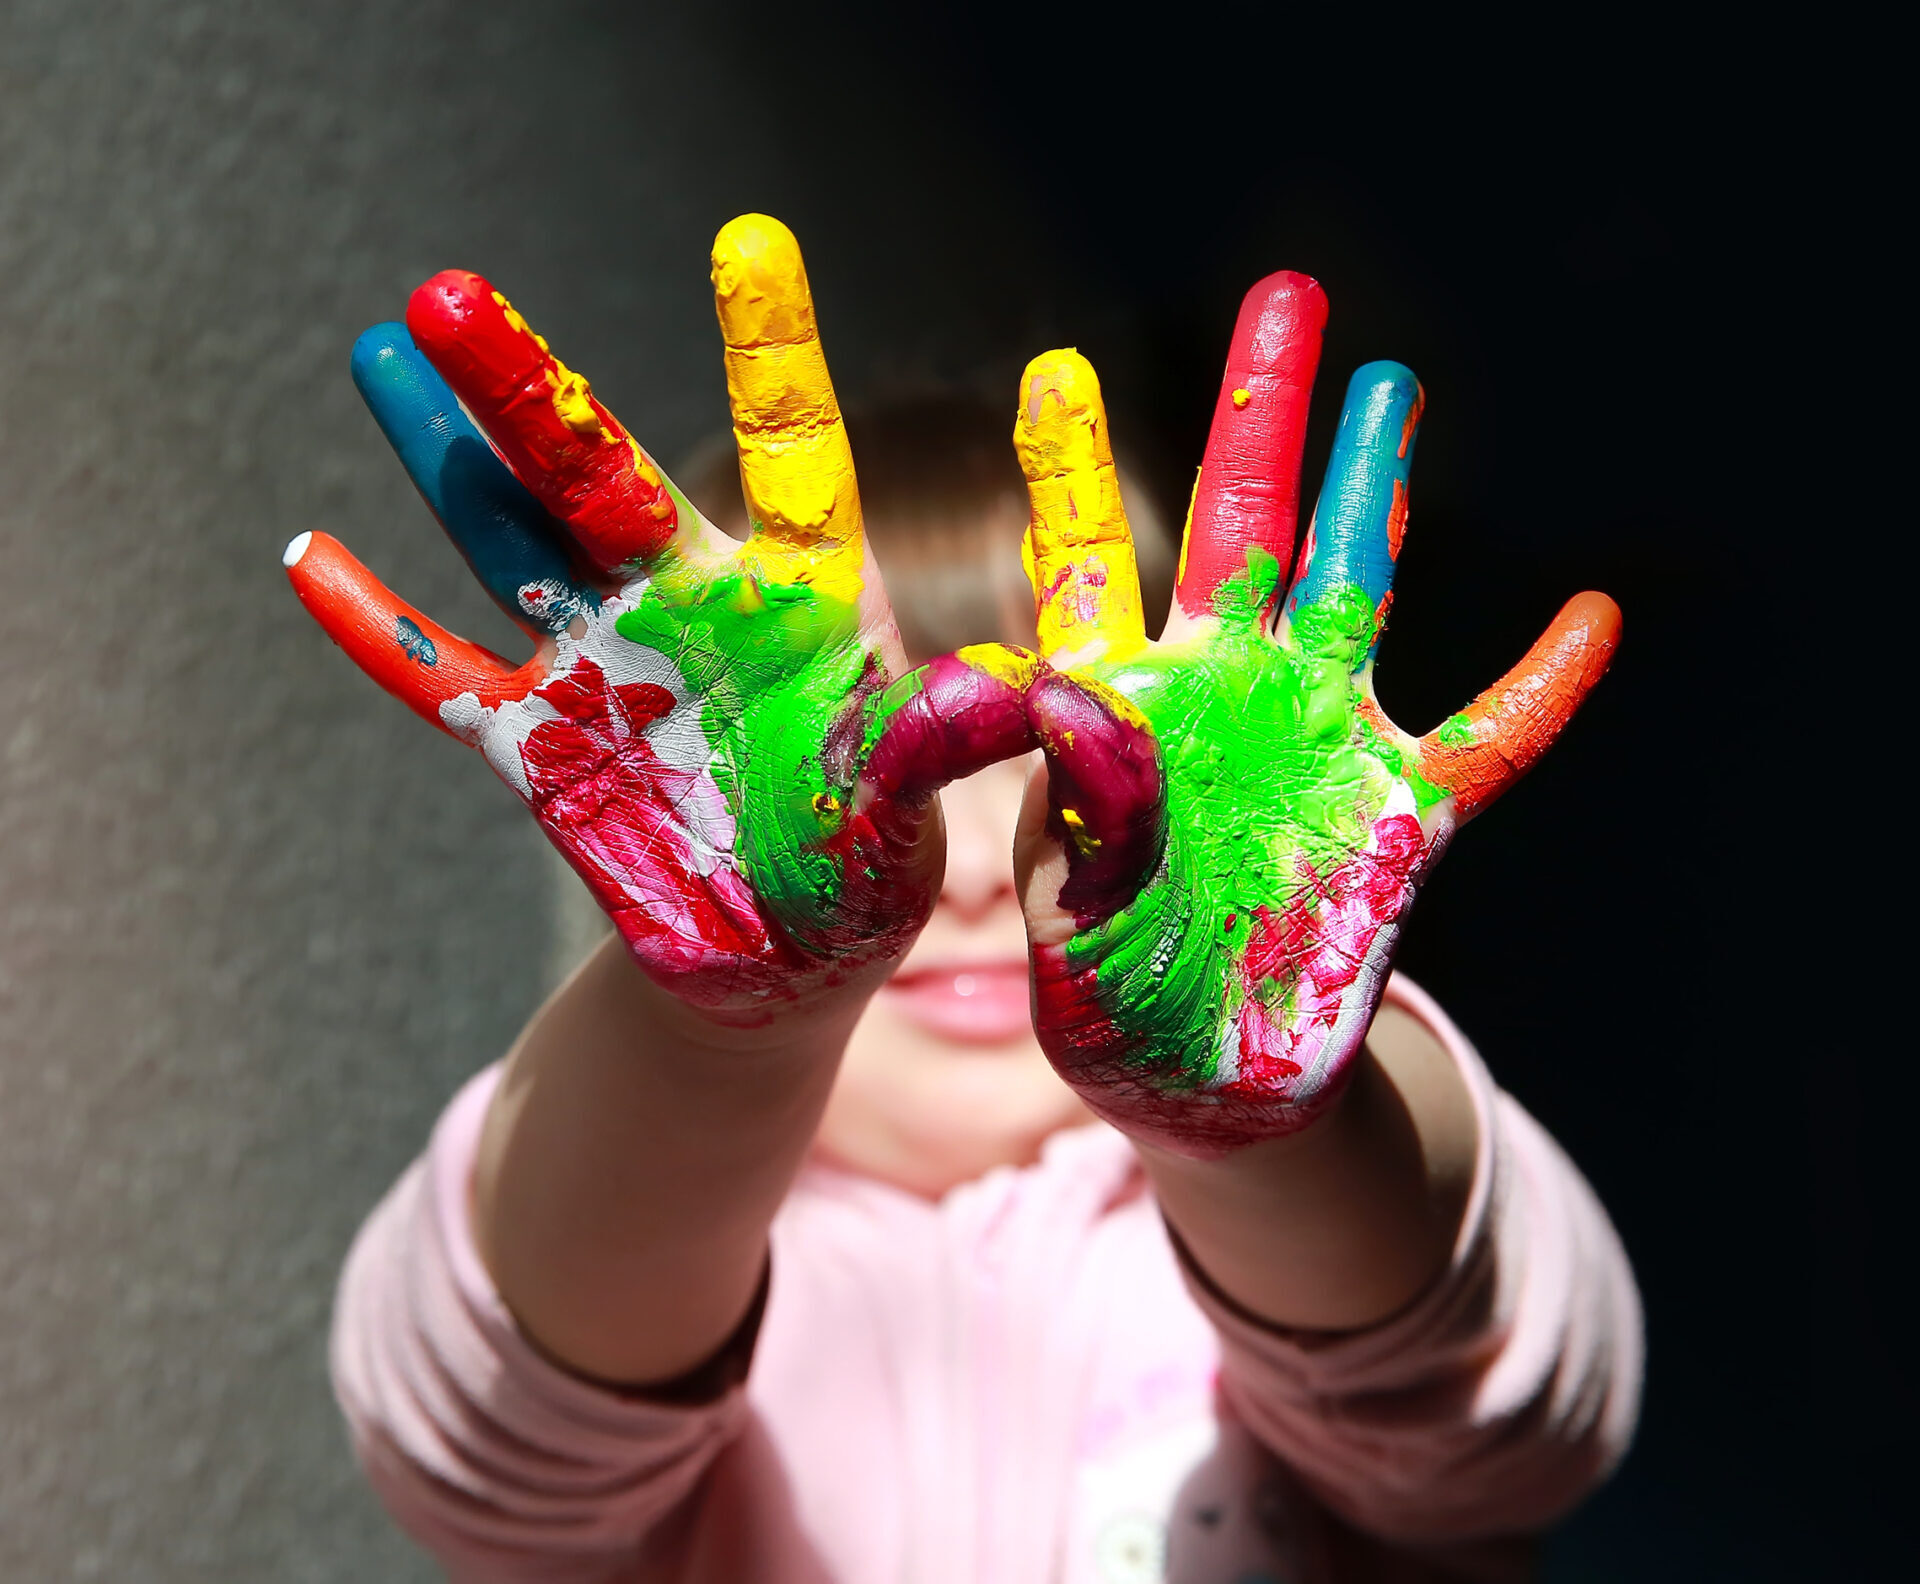 Tyttö kädet ojennettuna, sormet eri värisin öljyvärein maalattuina.